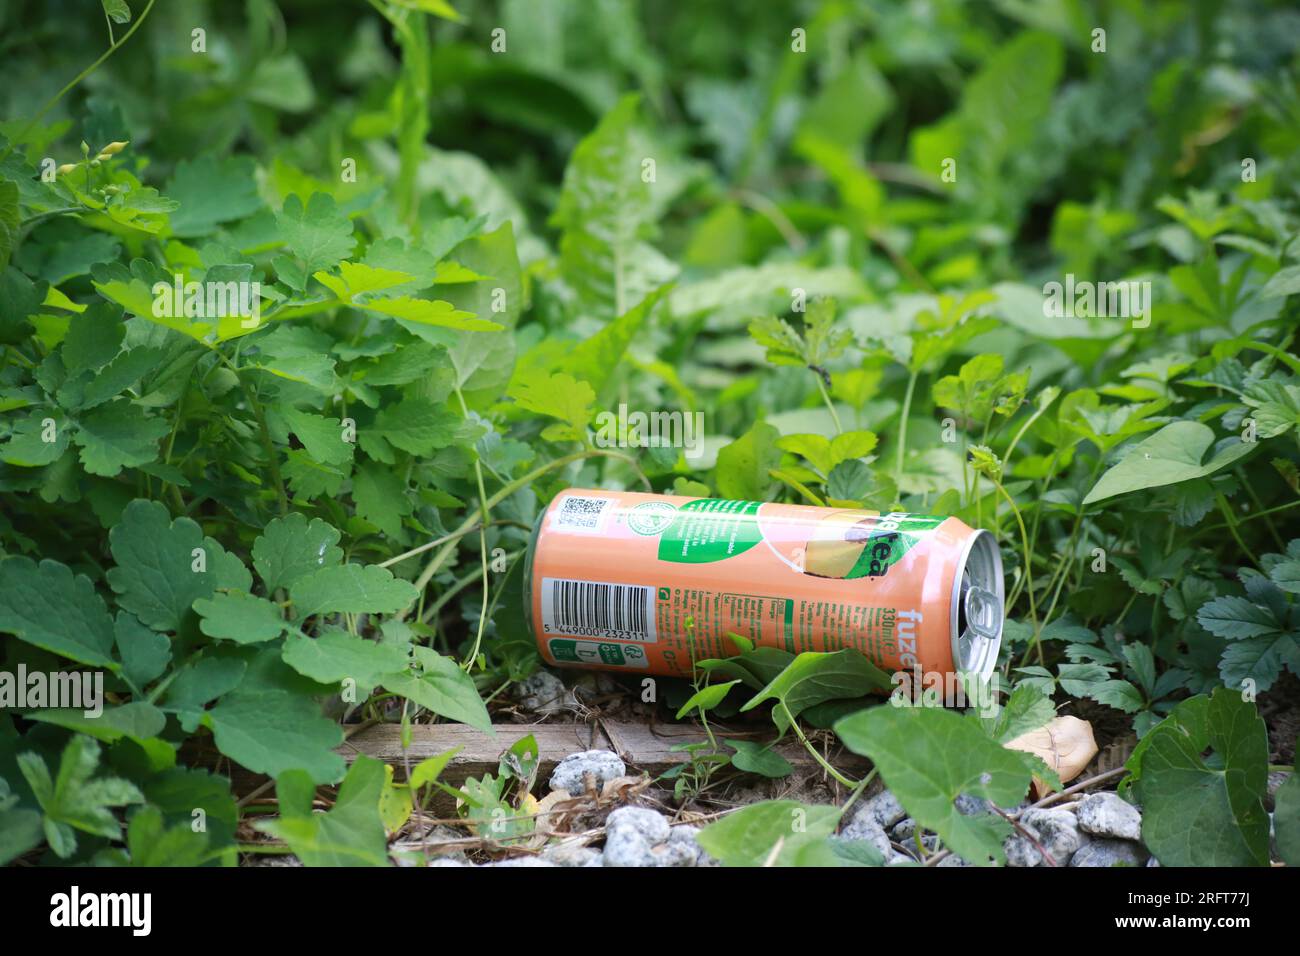 Canette de jus de fruits abandonnée dans l'herbe. Saint-Gervais-les-Bains. Haute-Savoie. Auvergne-Rhône-Alpes. France. Europe. Stock Photo